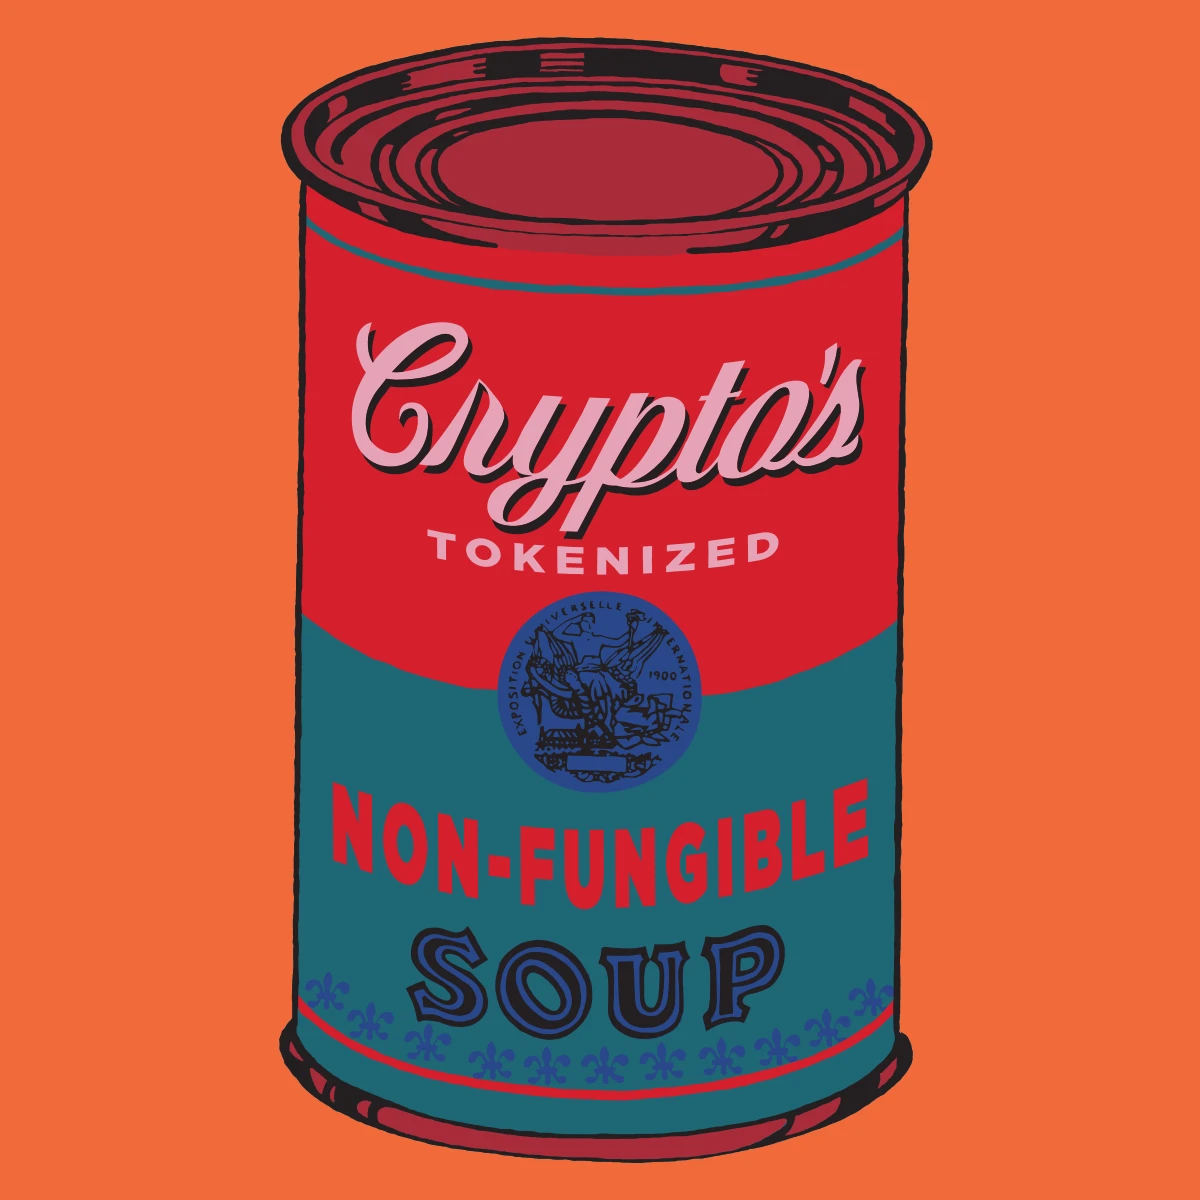 Non-Fungible Soup #1924